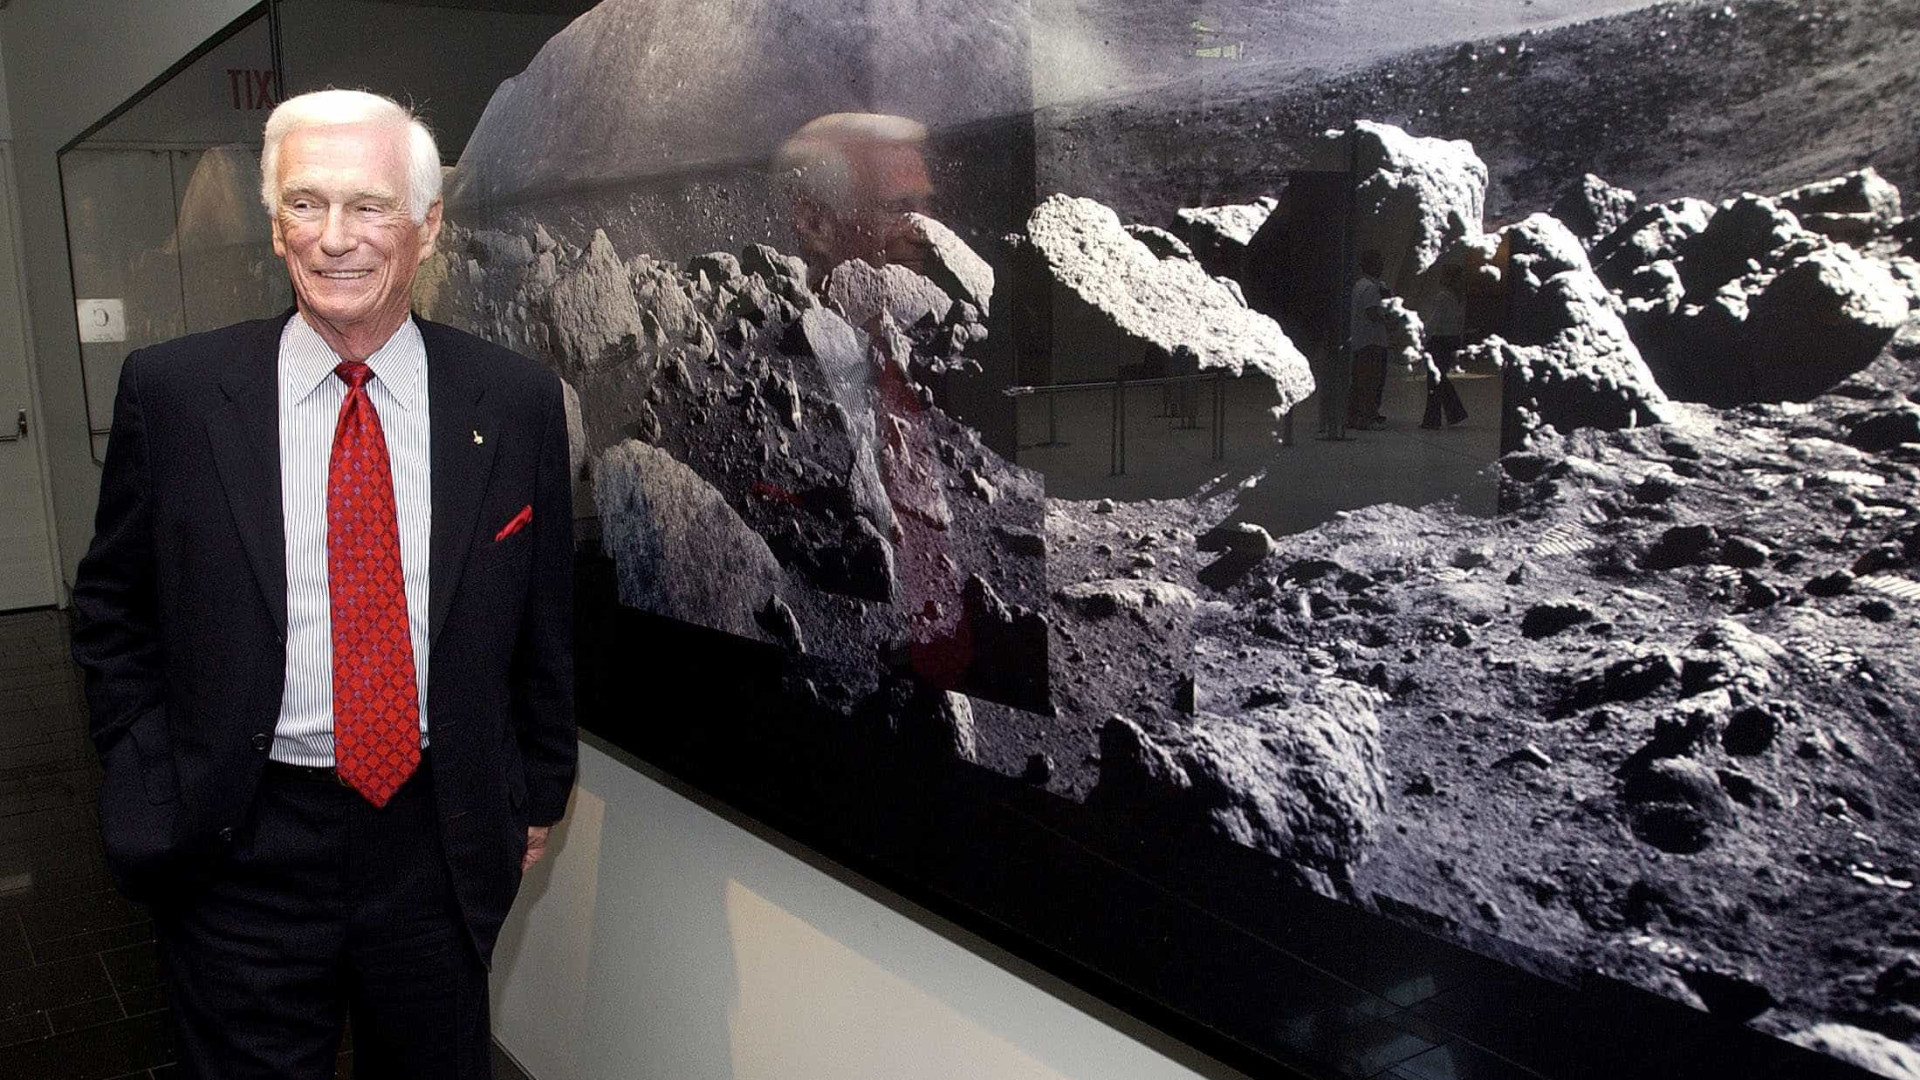 Morre o astronauta Gene Cernan, último 
homem a pisar na lua